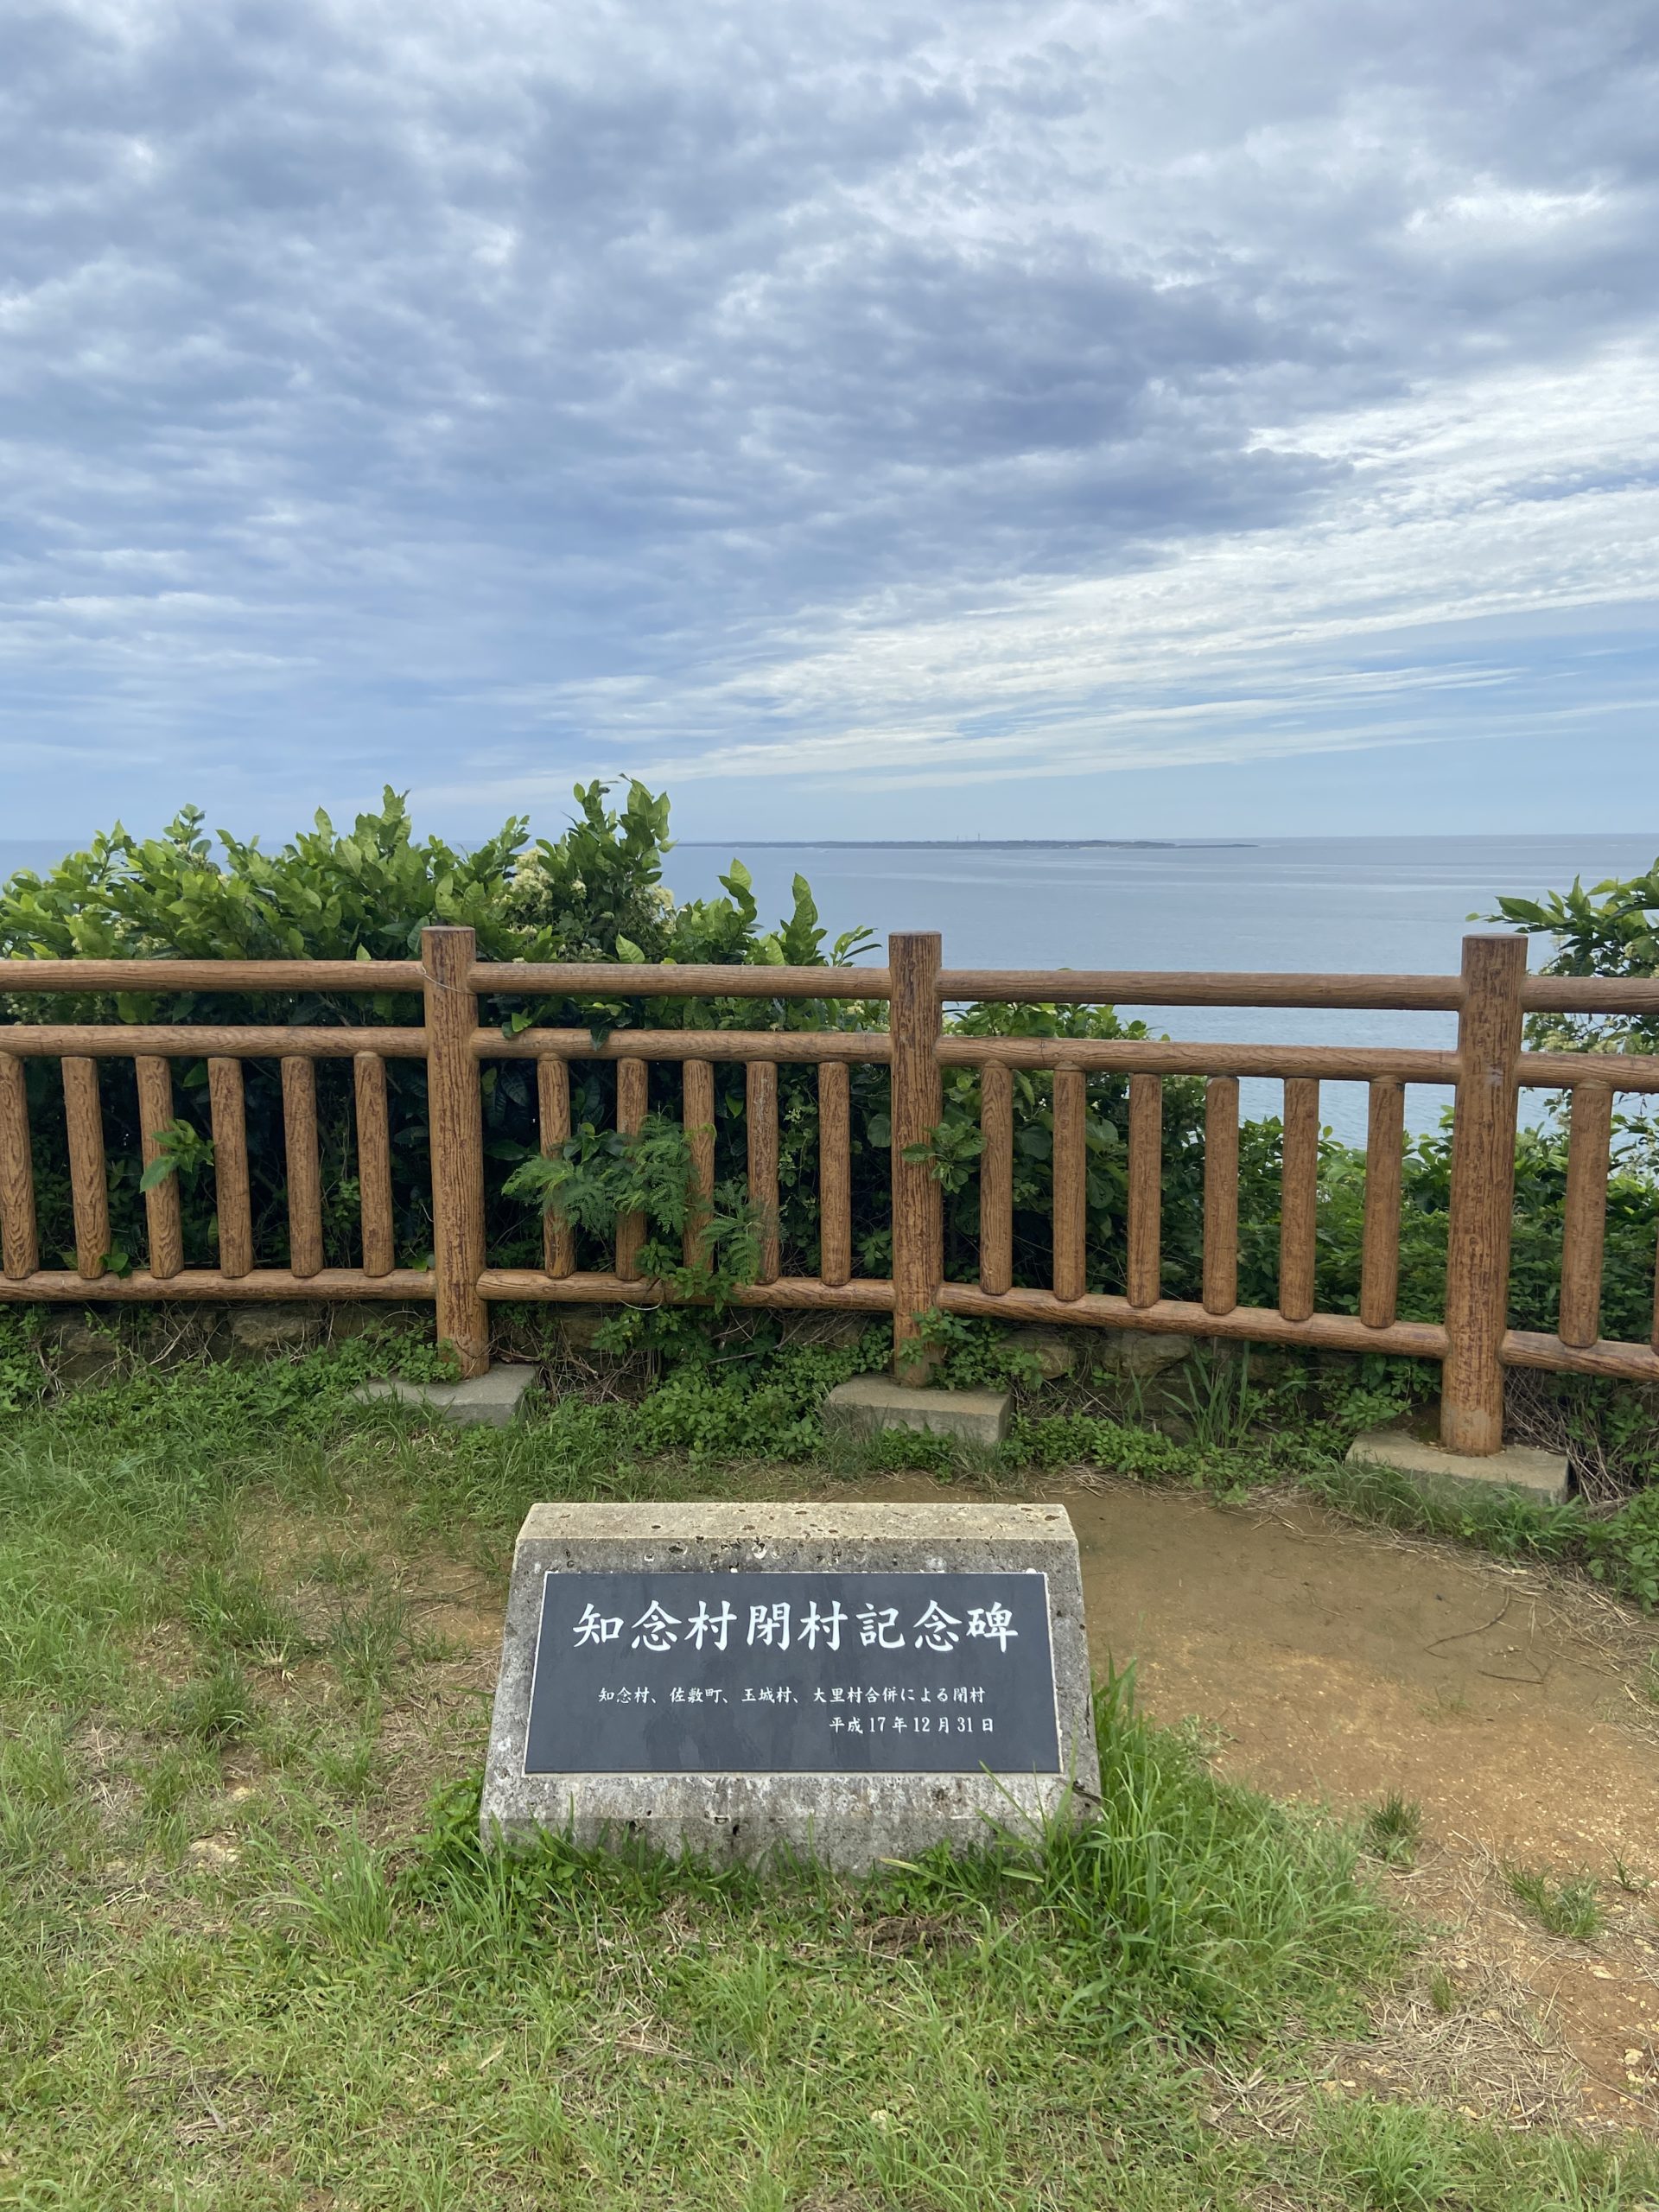 失恋したから、沖縄に女性一人旅してきた話。 ウサブログ